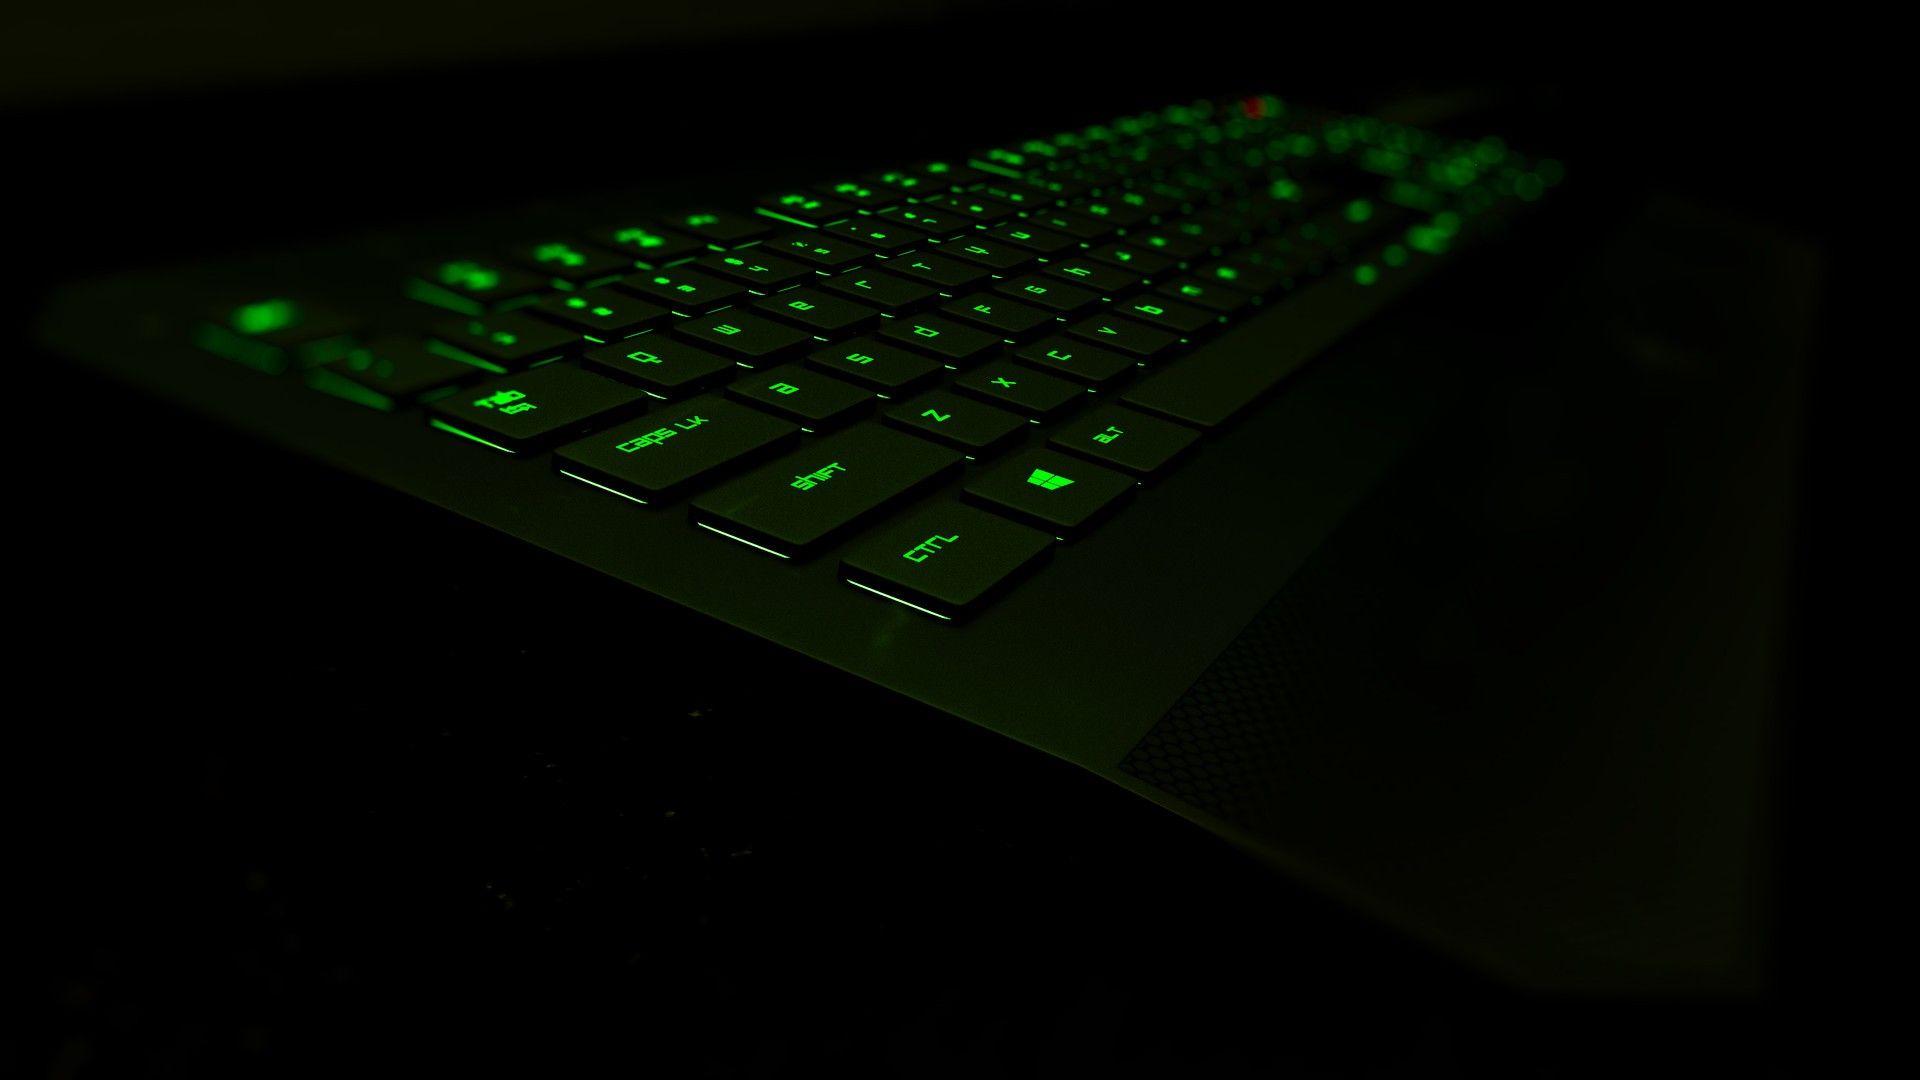 Wallpaper, black, 3D, glowing, green, technology, keyboards